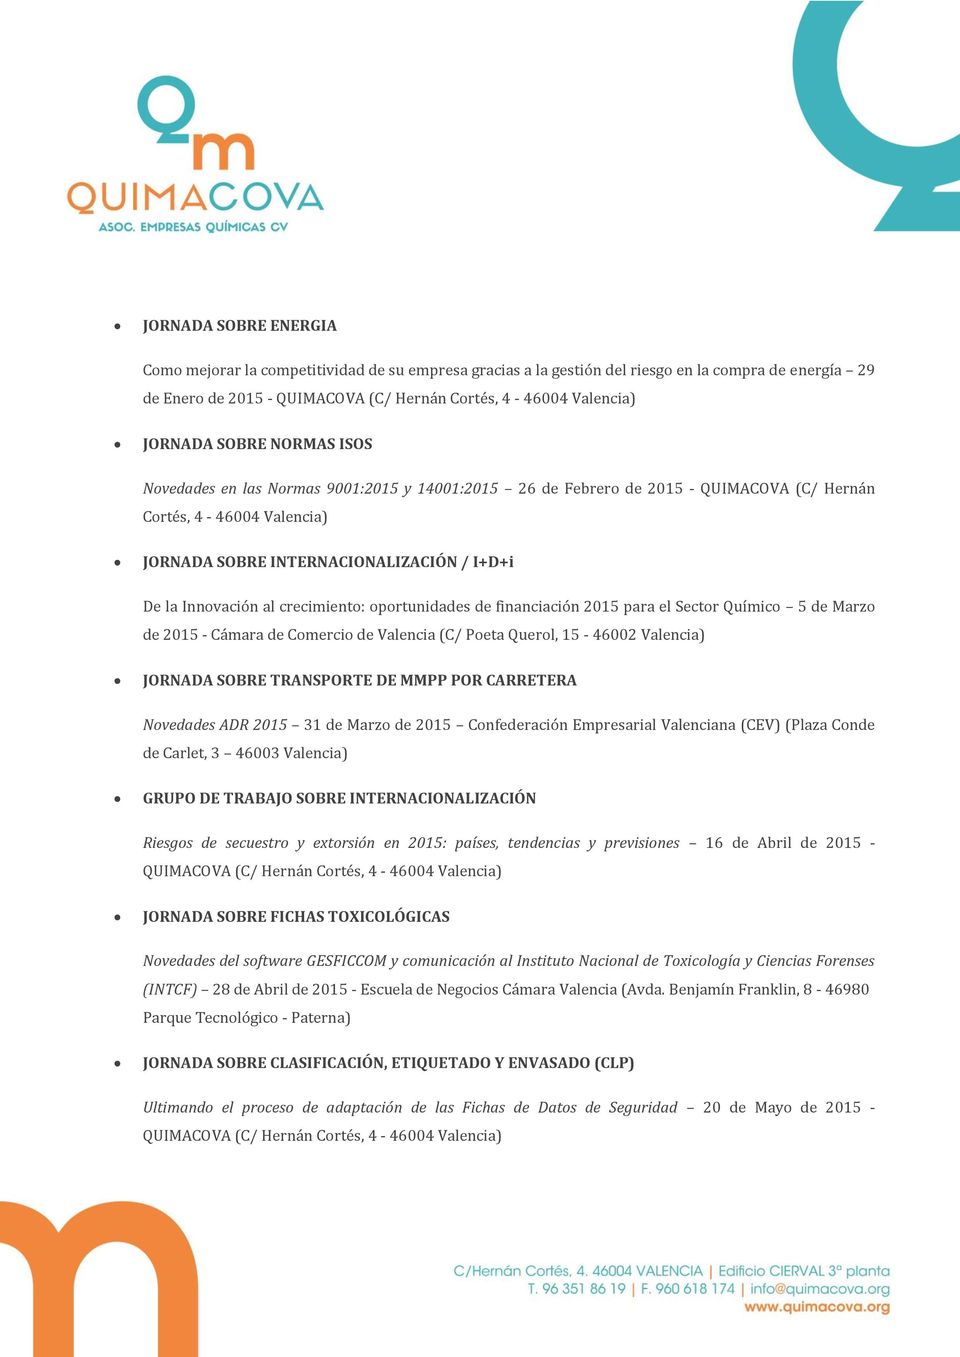 crecimiento: oportunidades de financiación 2015 para el Sector Químico 5 de Marzo de 2015 - Cámara de Comercio de Valencia (C/ Poeta Querol, 15-46002 Valencia) JORNADA SOBRE TRANSPORTE DE MMPP POR